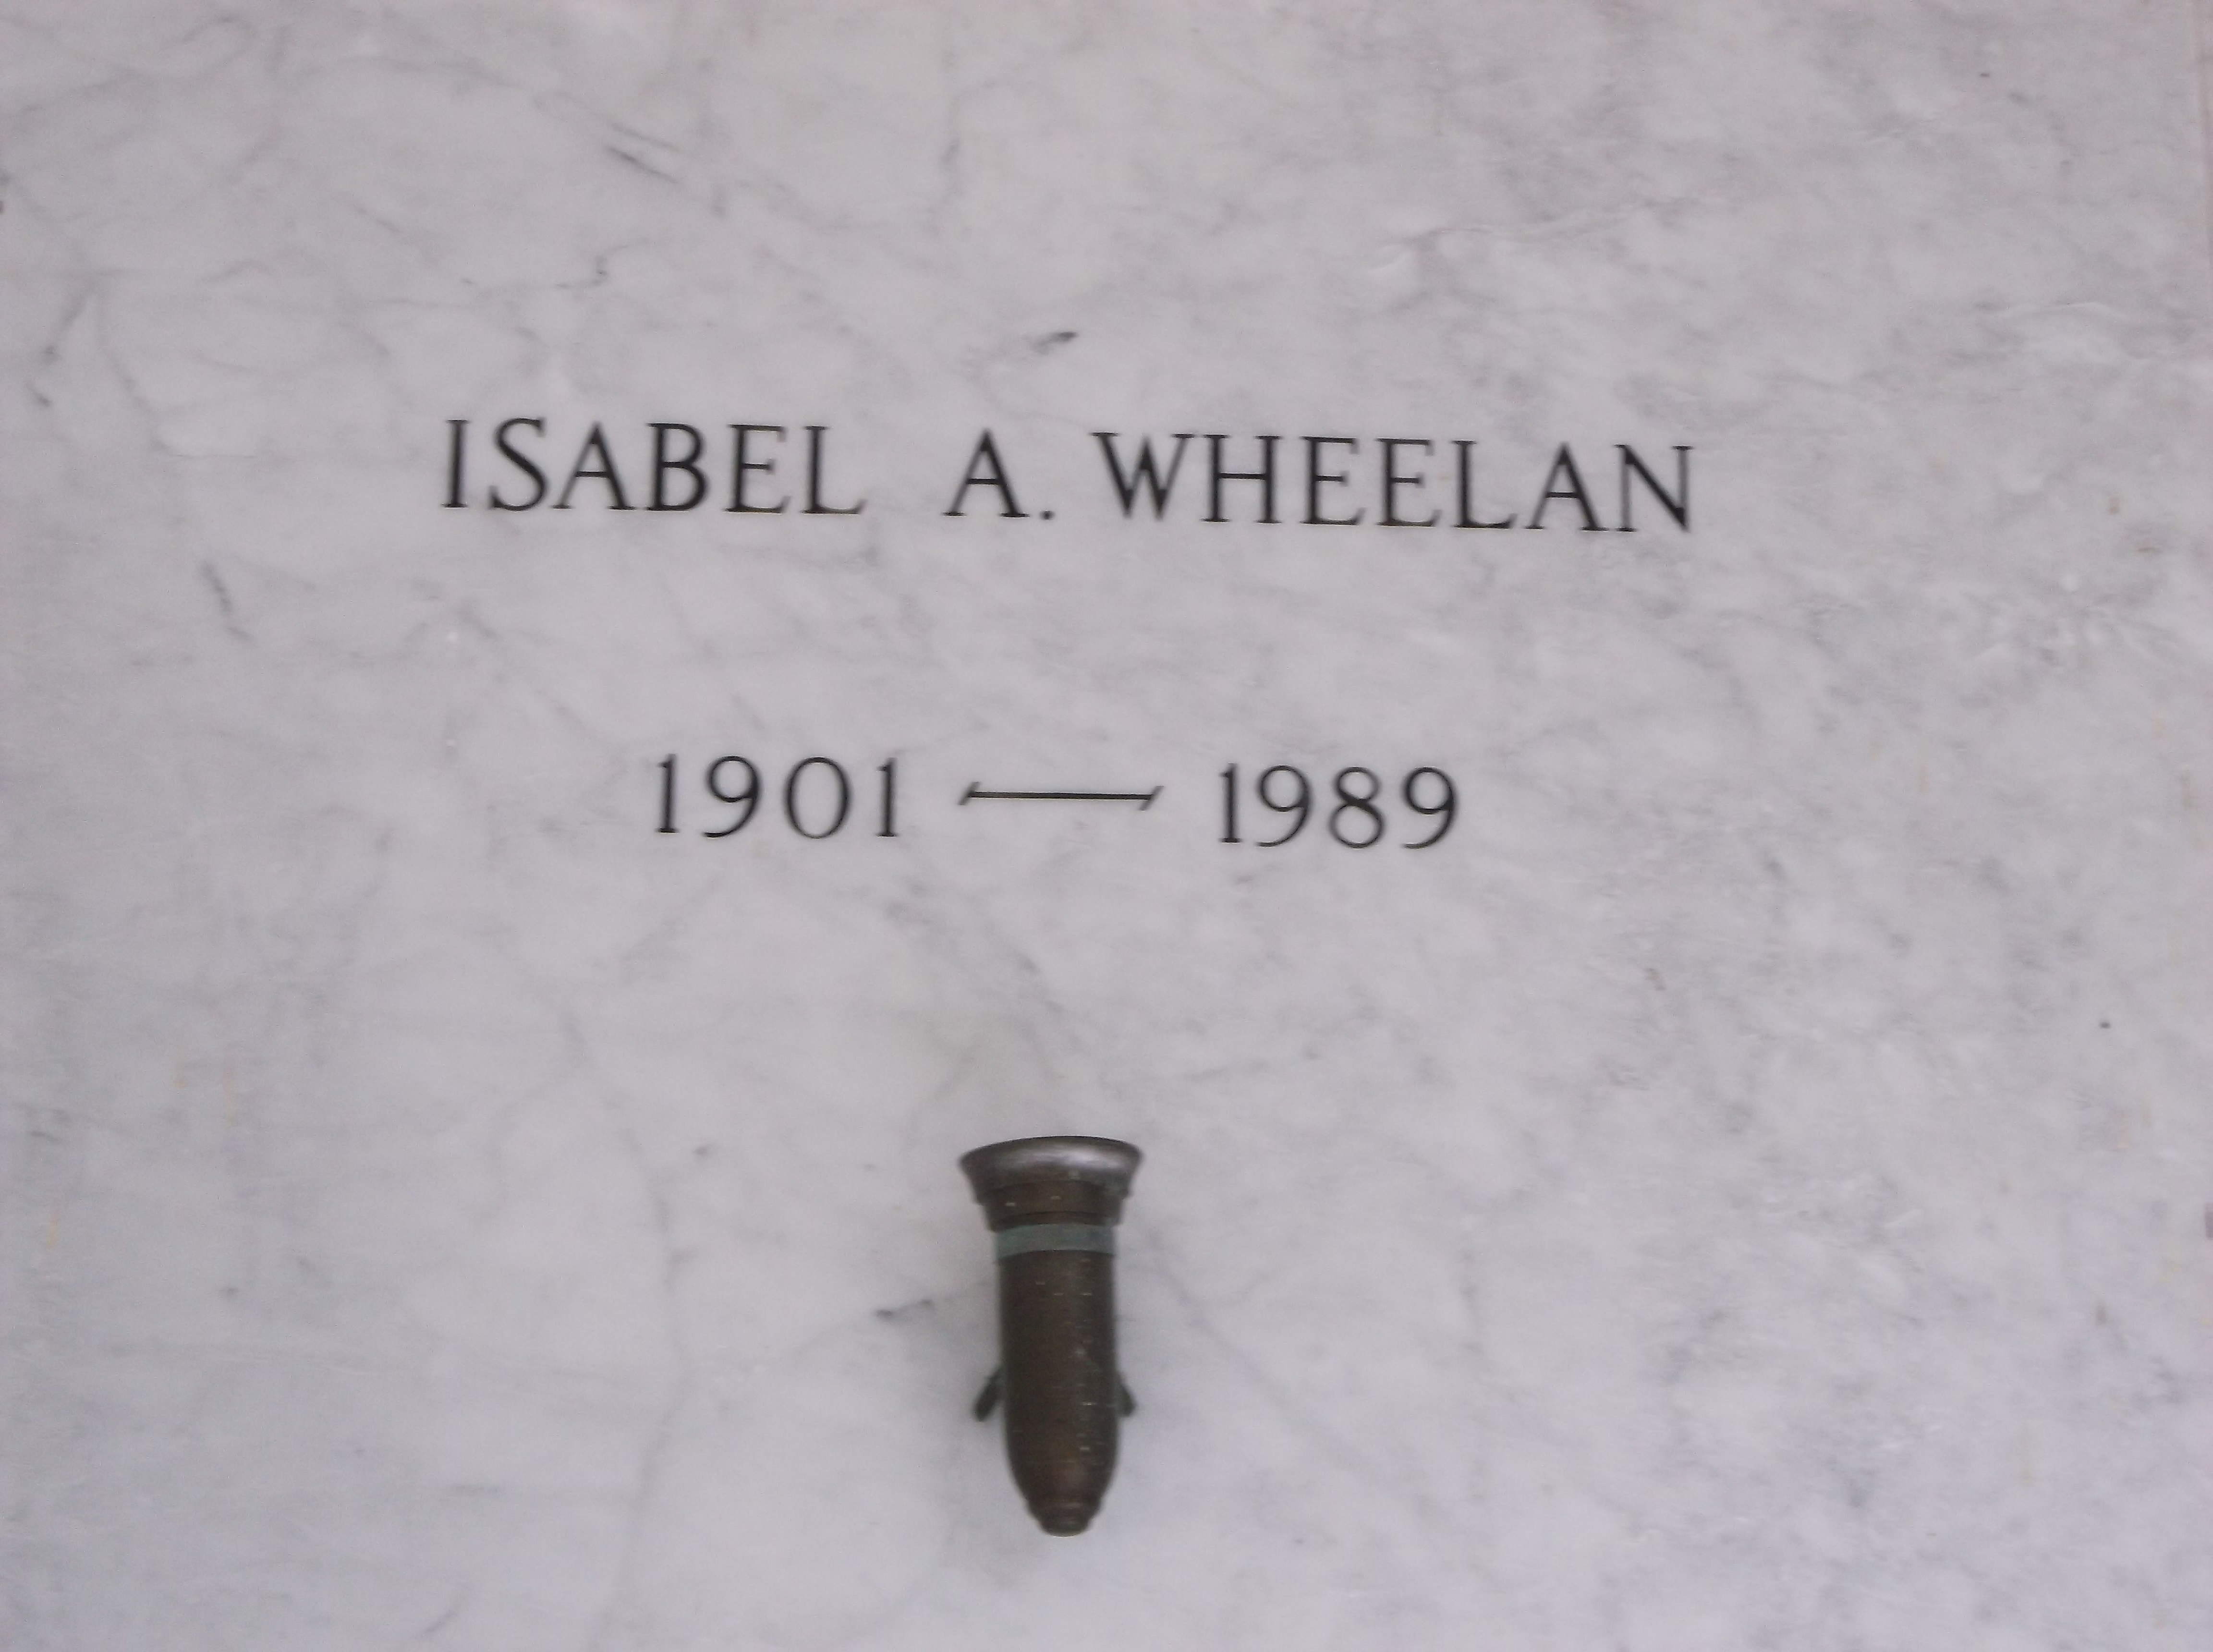 Isabel A Wheelan